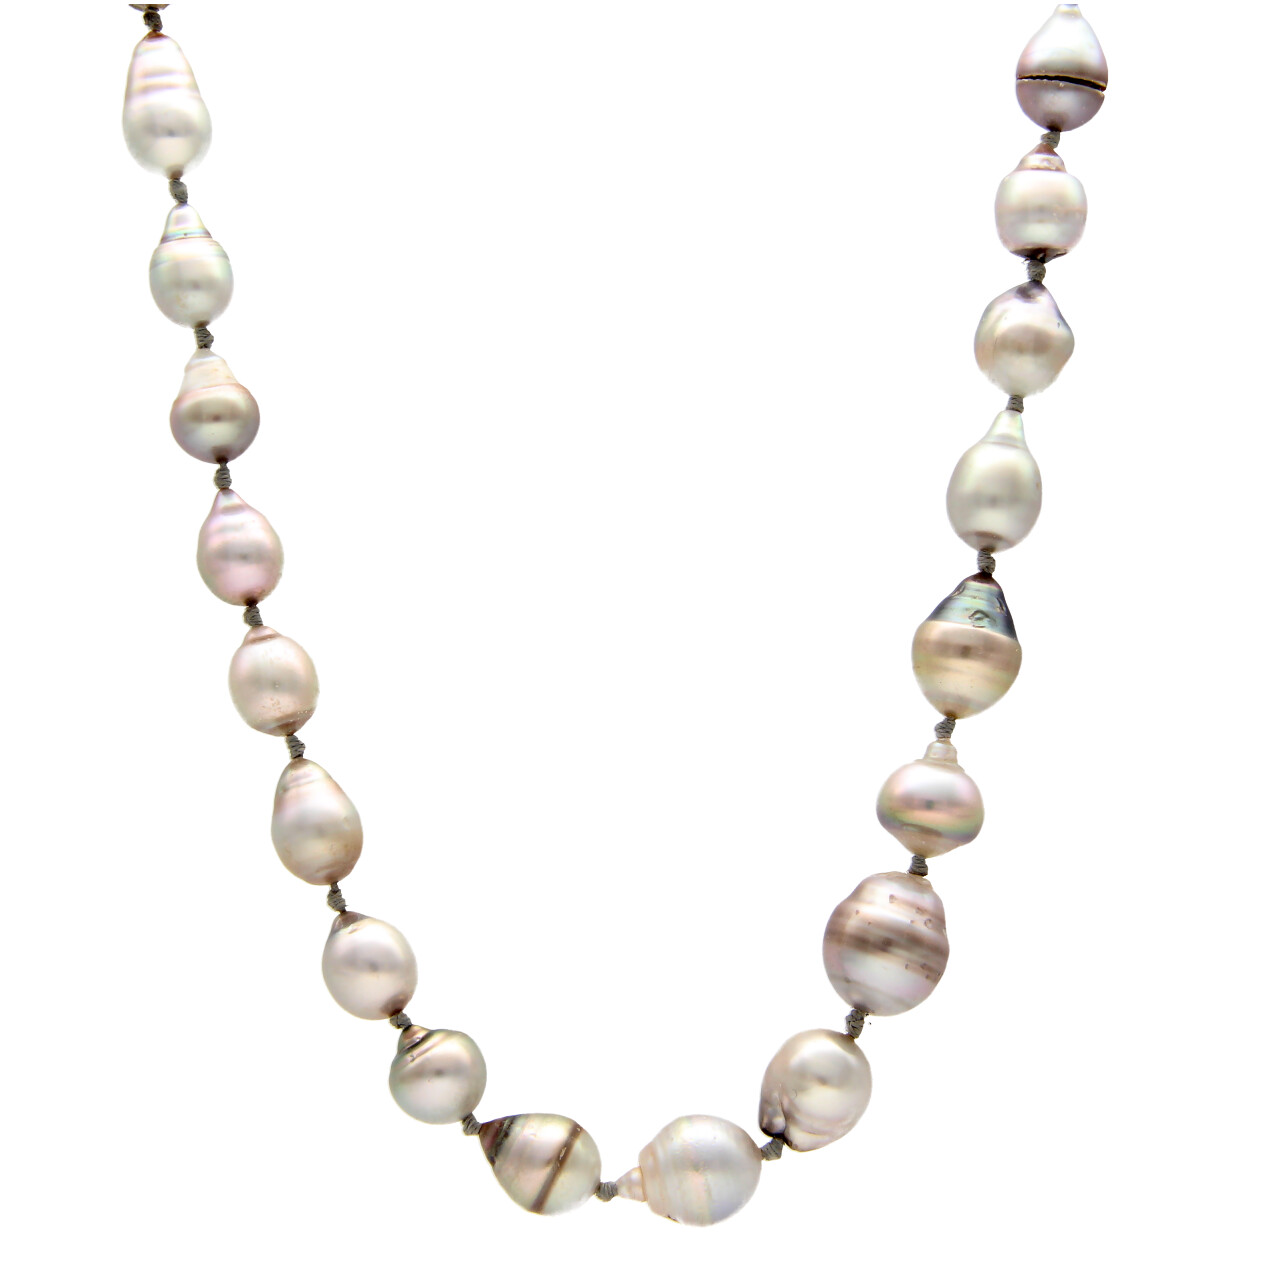 Natural Pearl Necklace with white gold clasp - Diamanti e Carati